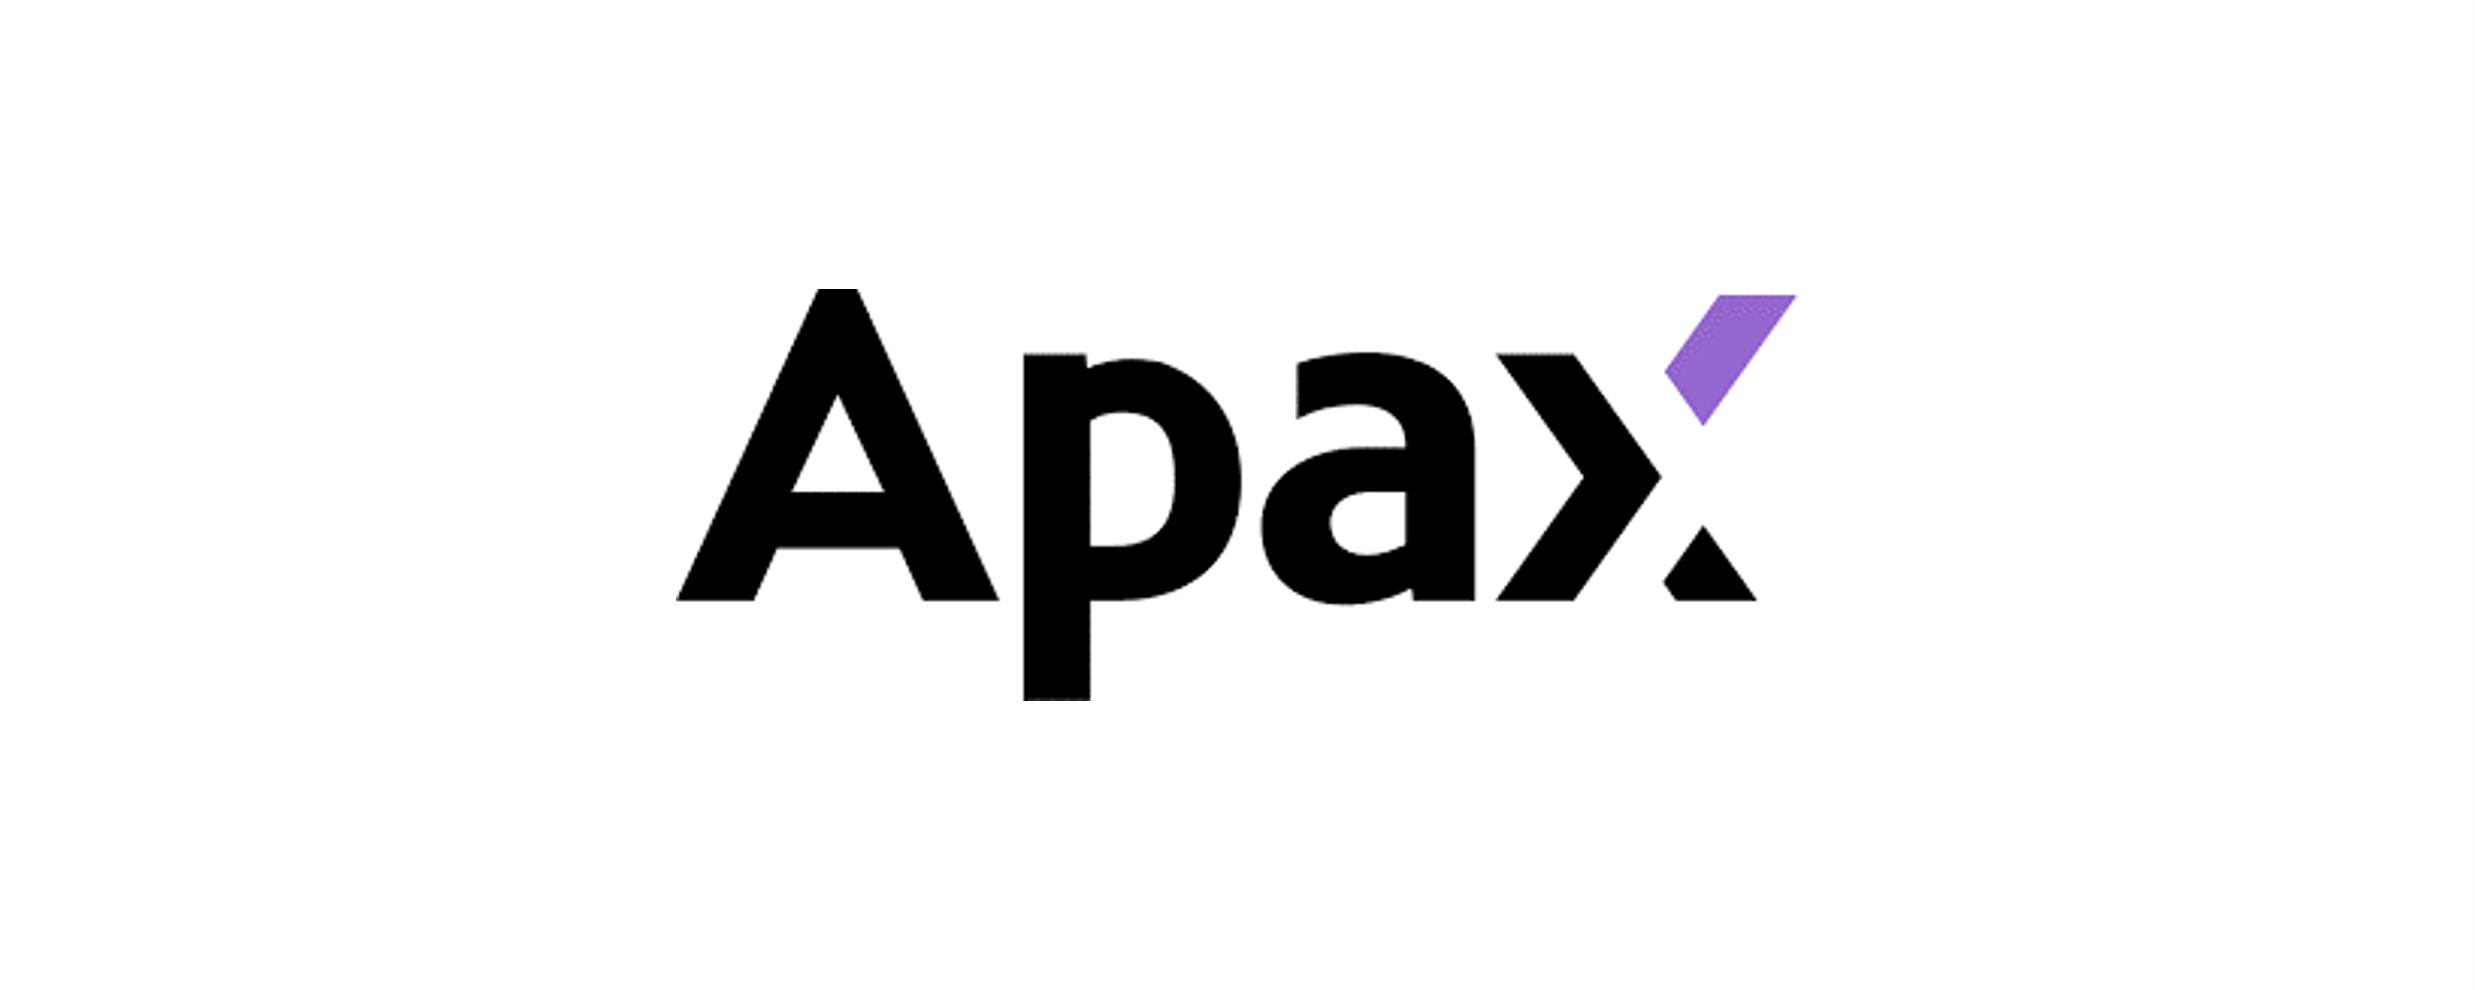 Apax logo